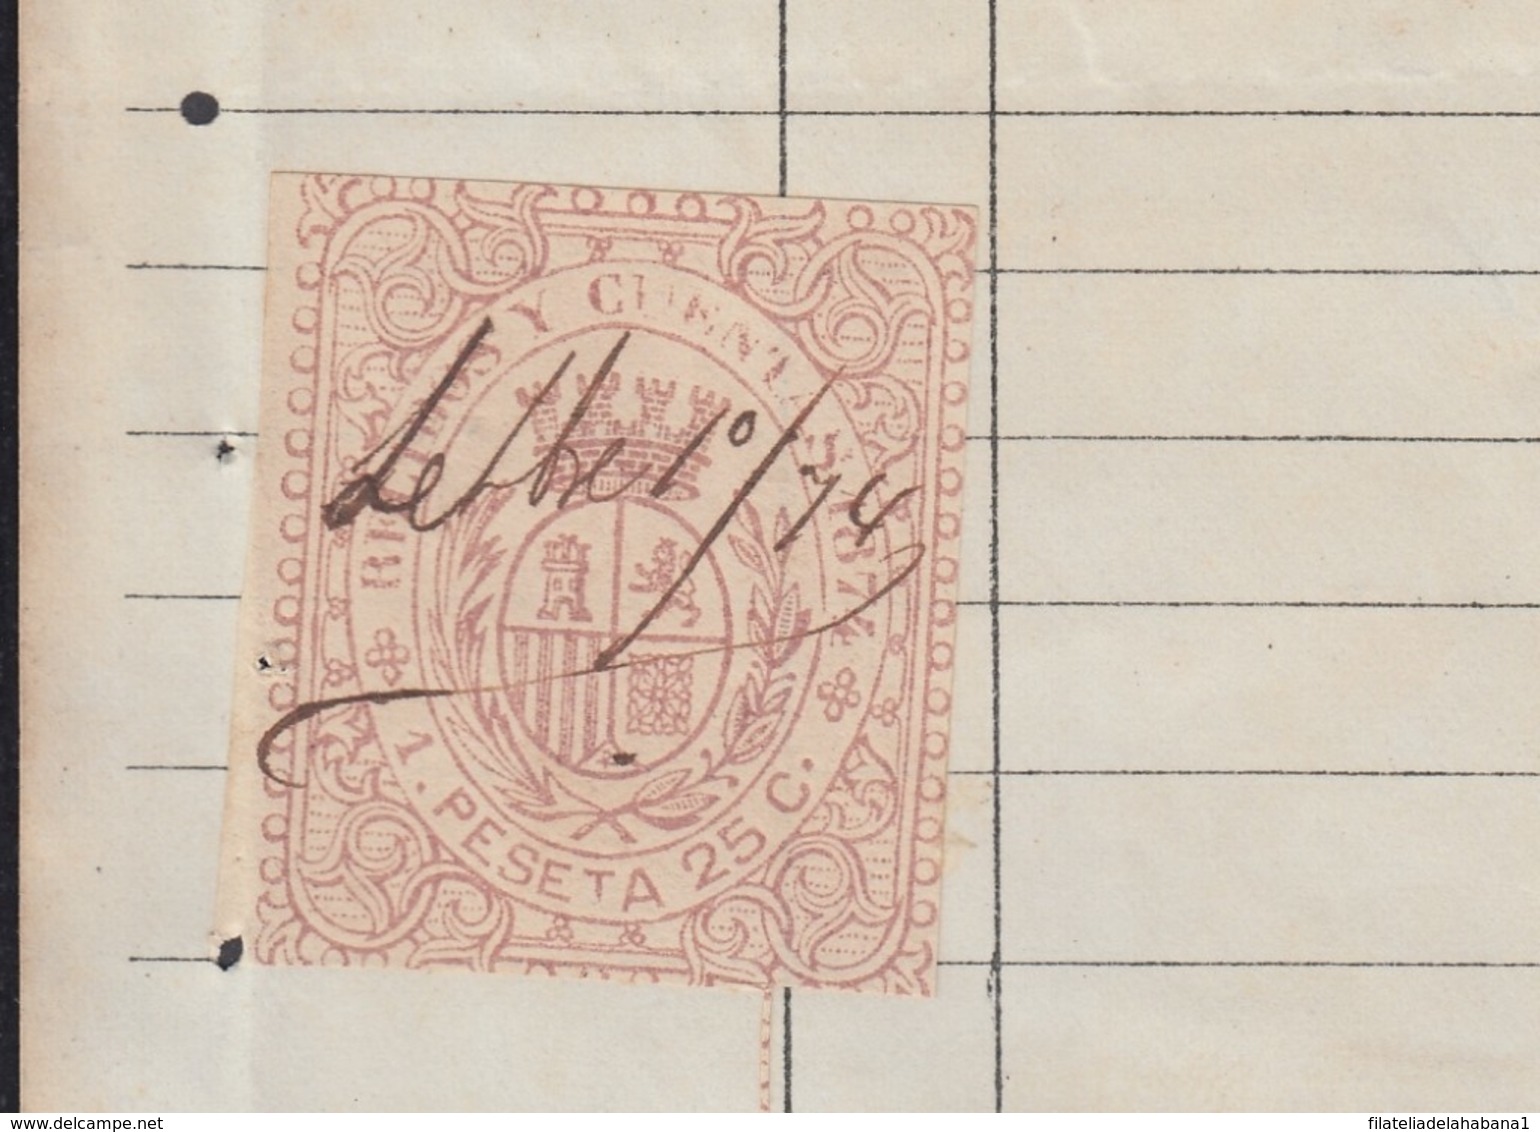 REC-127 CUBA SPAIN ESPAÑA (LG1635) RECIBOS REVENUE 1874. JOYERIA Y PLATERIA. JEWERLY INVOICE 1875. - Impuestos